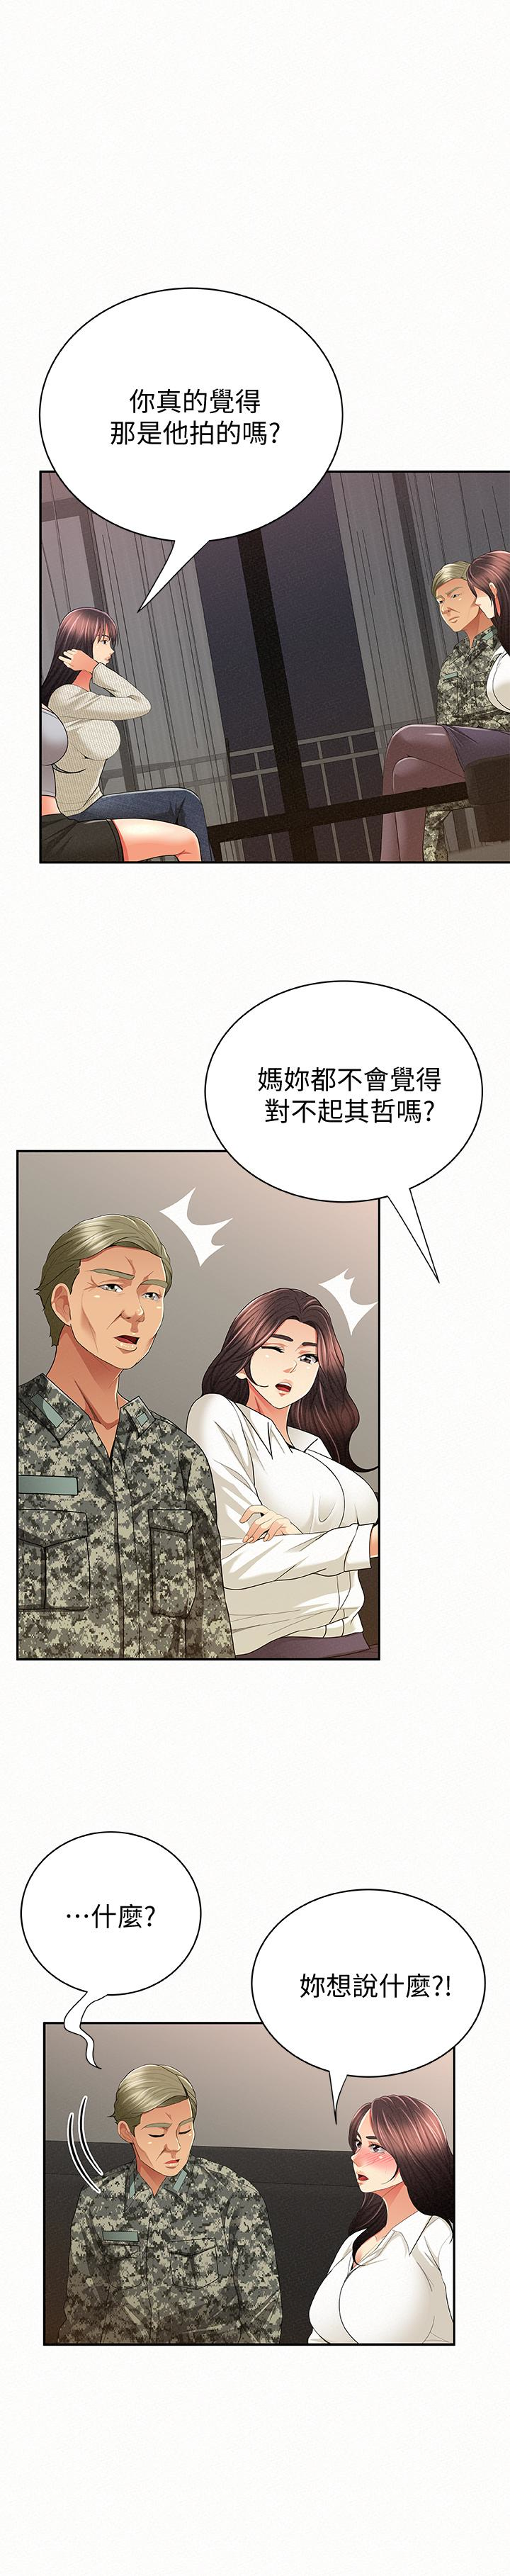 韩国污漫画 報告夫人 最终话-漫长军人生活的尽头 21